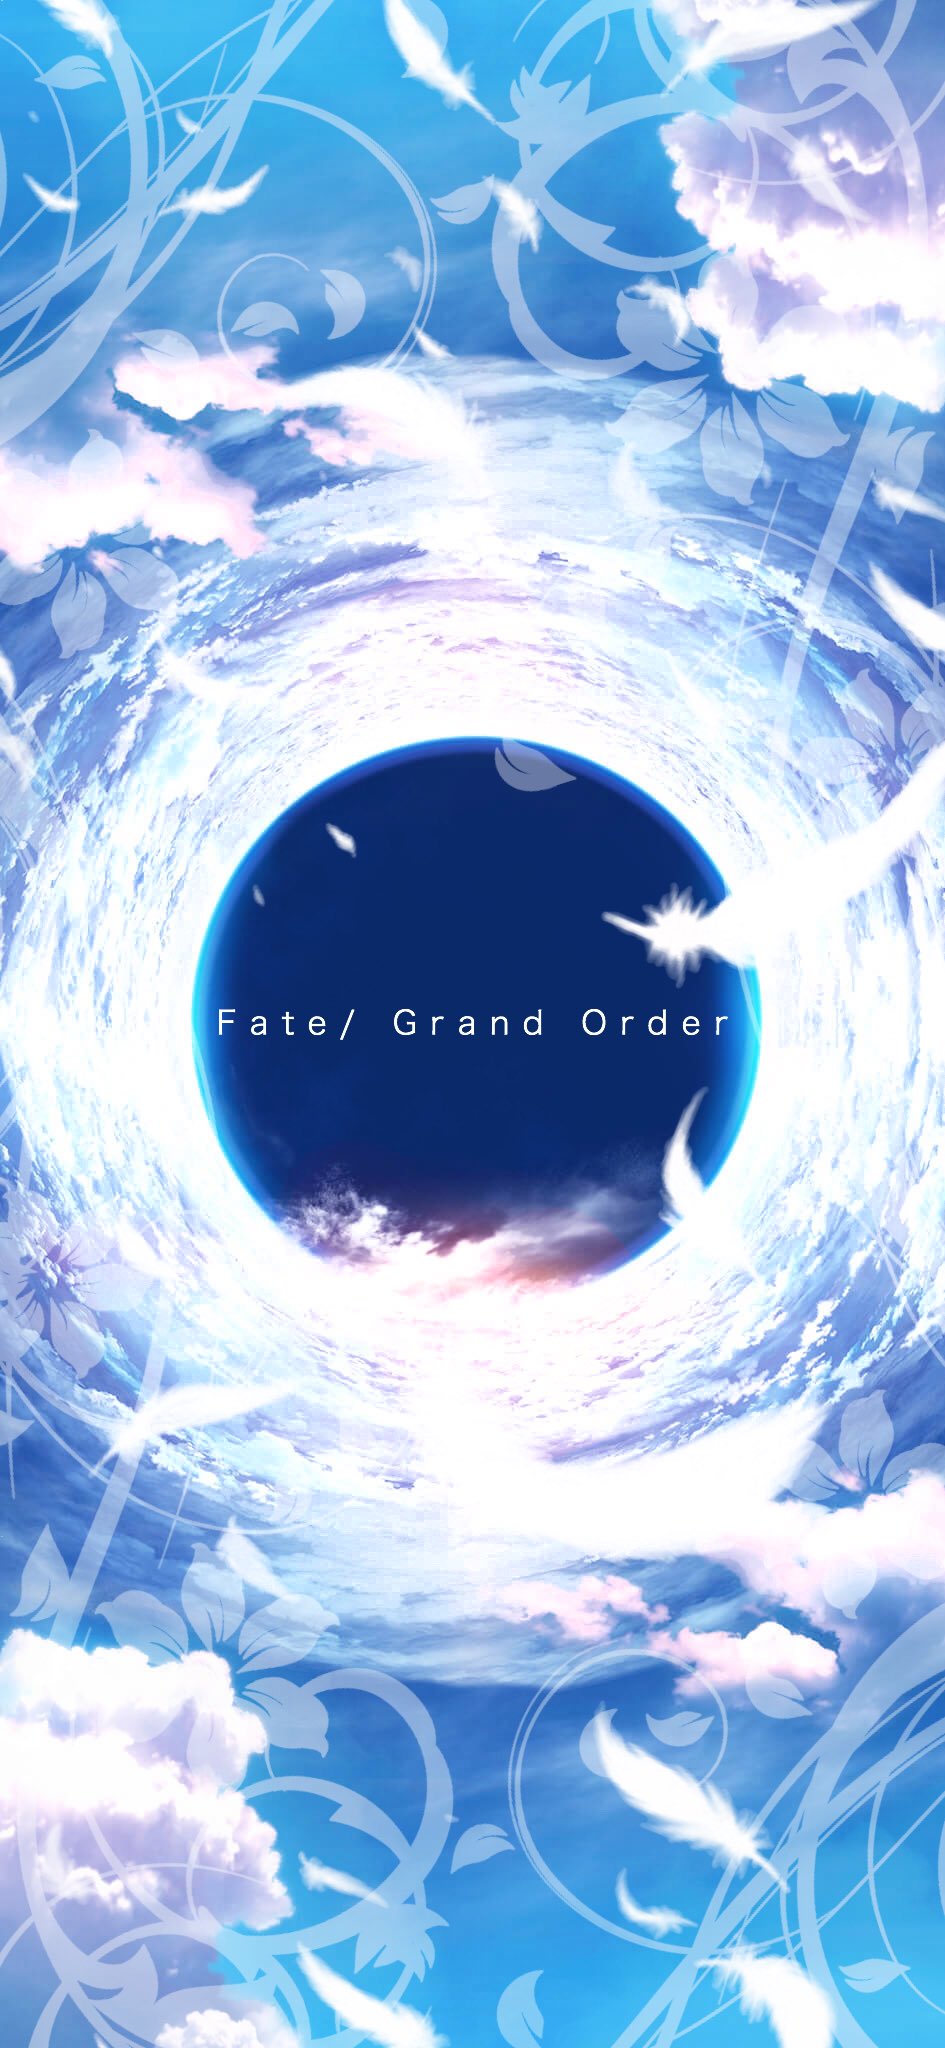 輝桜 かぐさ 輝桜の壁紙宝庫 第246弾 Fate Fate Grand Orderの壁紙です 空のイメージです Fate Fgo Fatego Fate壁紙宝庫